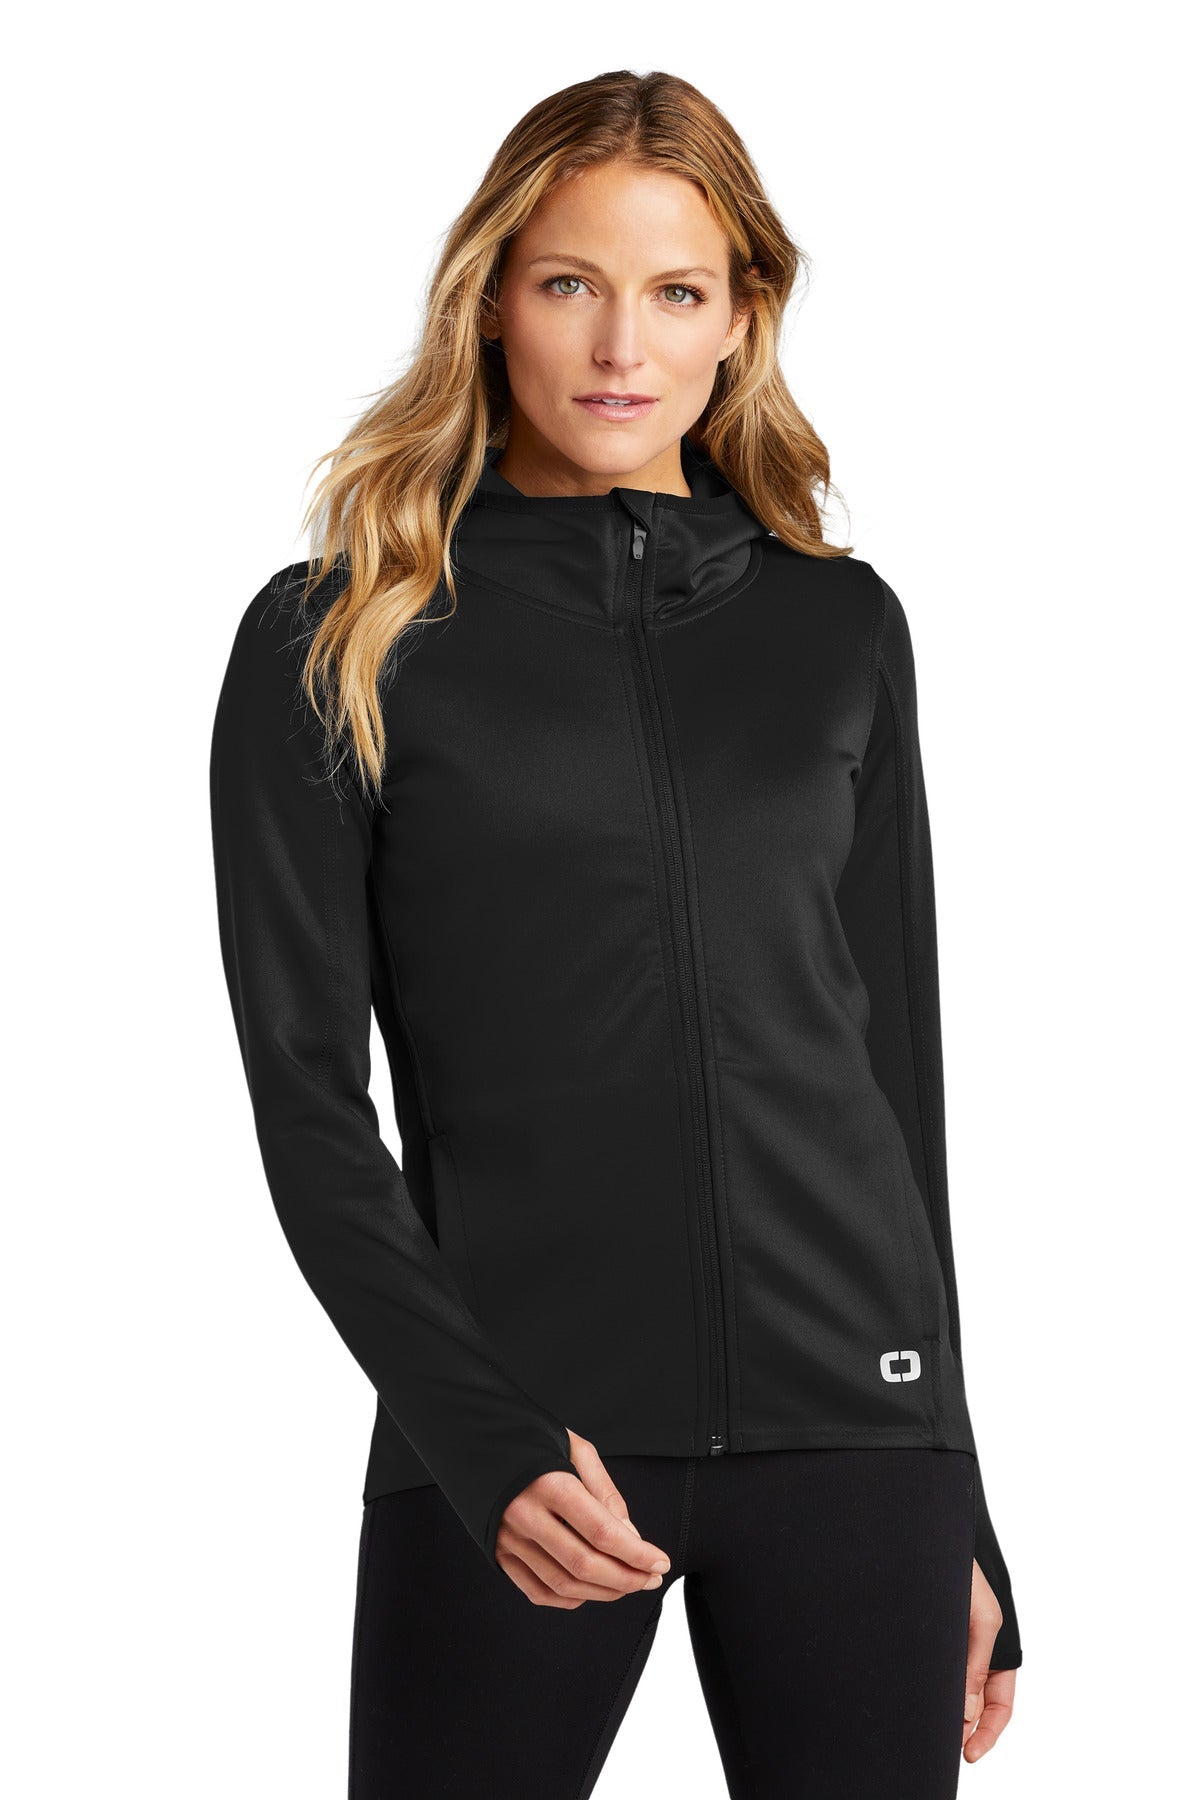 OGIO ® ENDURANCE Ladies Stealth Full-Zip Jacket. LOE728 - DFW Impression